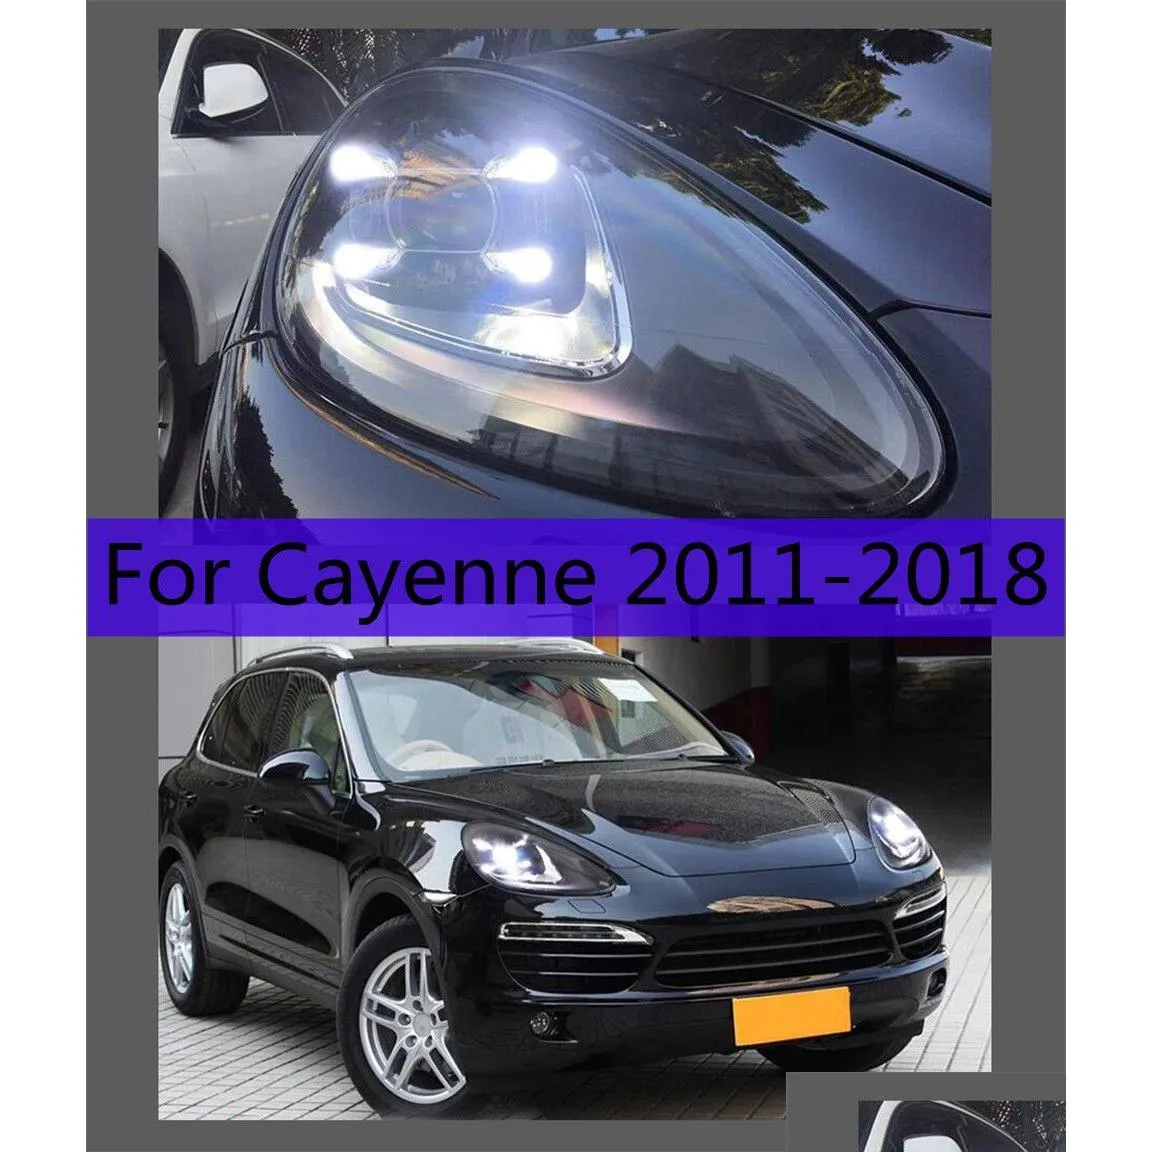 Gruppo ottico per auto Luci diurne a LED per faro Cayenne 2011-18 Porsche Drl Indicatori di direzione Fascio alto/basso Angelo Occhio Lente del proiettore D Dhhda